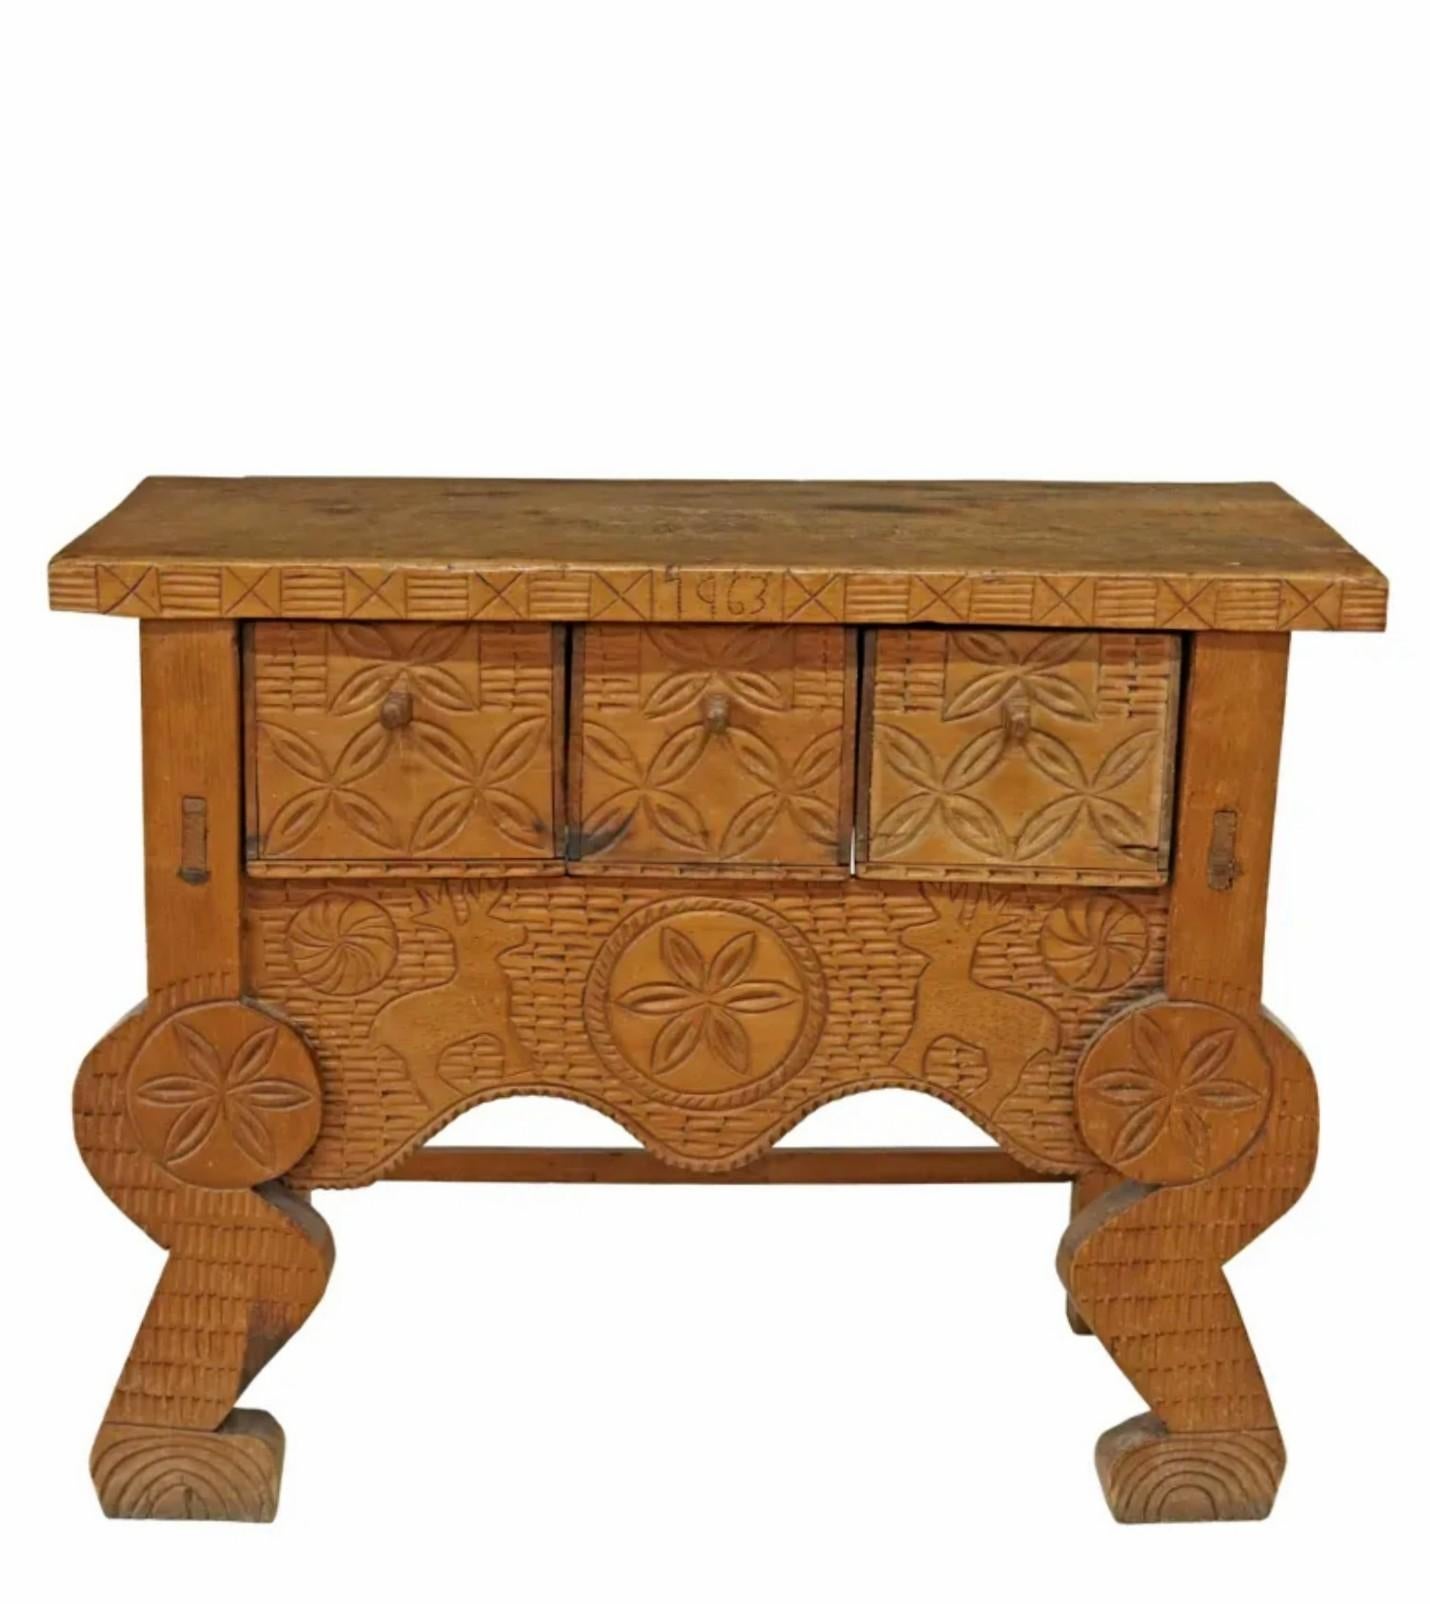 Eine seltene guatemaltekische Hand geschnitzt Holz Konsole Tisch mit schön gealtert warmen rustikalen Patina. 

Handgefertigt in Nahuala, Guatemala, in der Mitte des 20. Jahrhunderts, primitive handgefertigte Konstruktion, Qualität